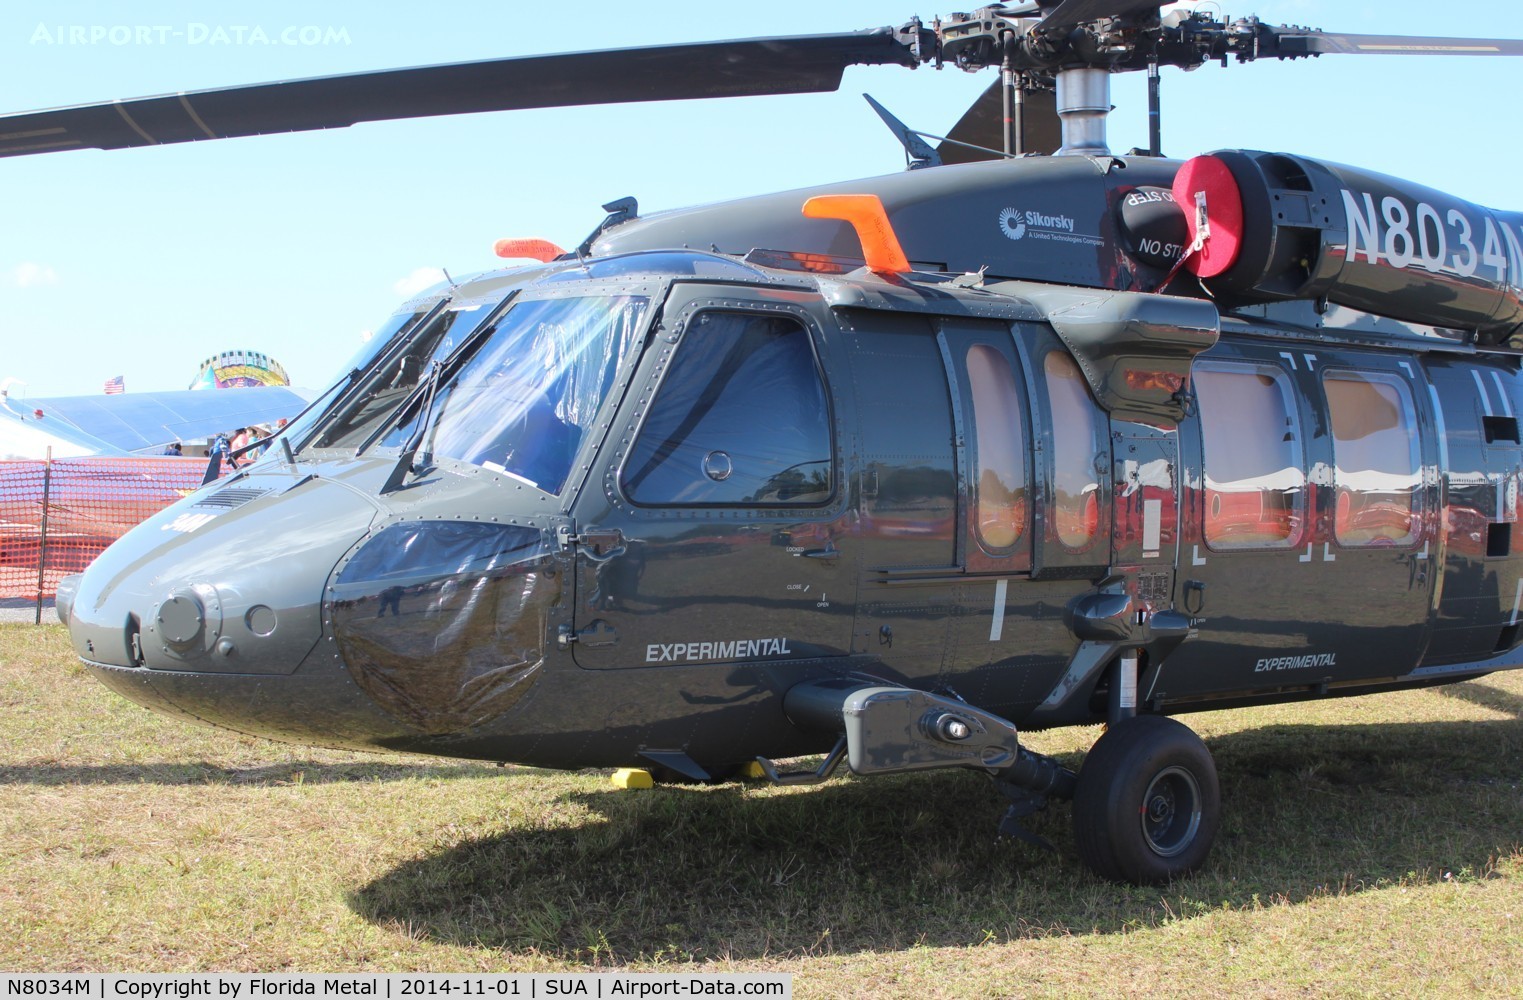 N8034M, Sikorsky H-60 C/N n/a, Sikorsky H-60 trainer